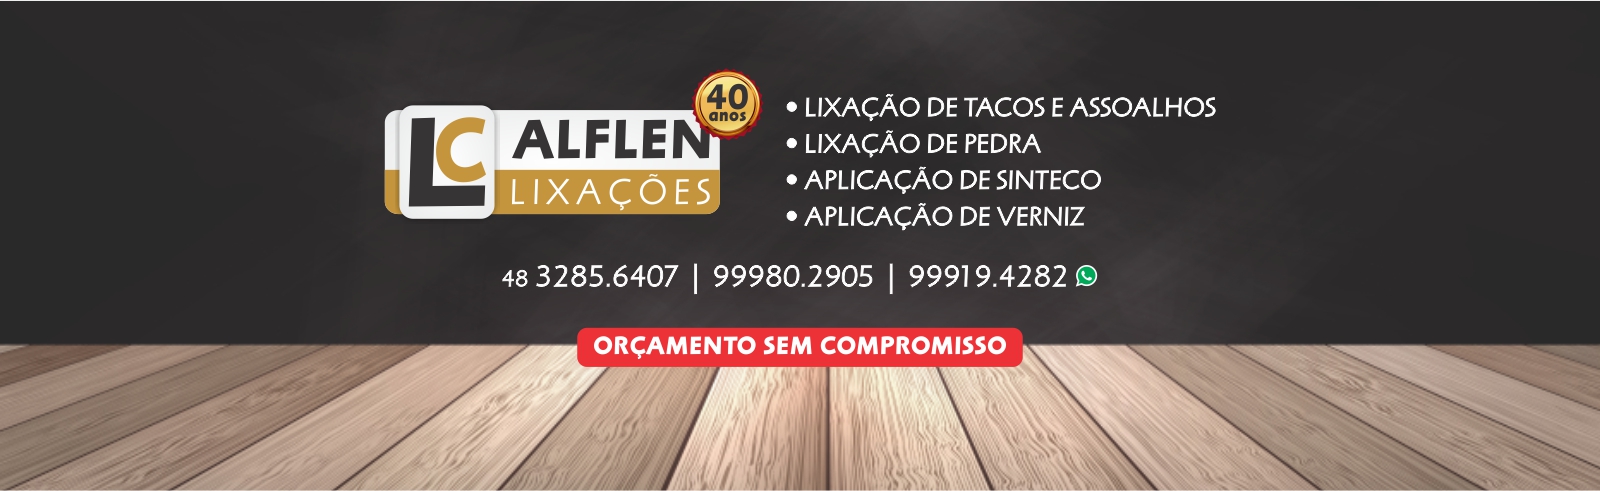 LC Alflen Lixação de Tacos e Assoalhos - Florianópolis e Região